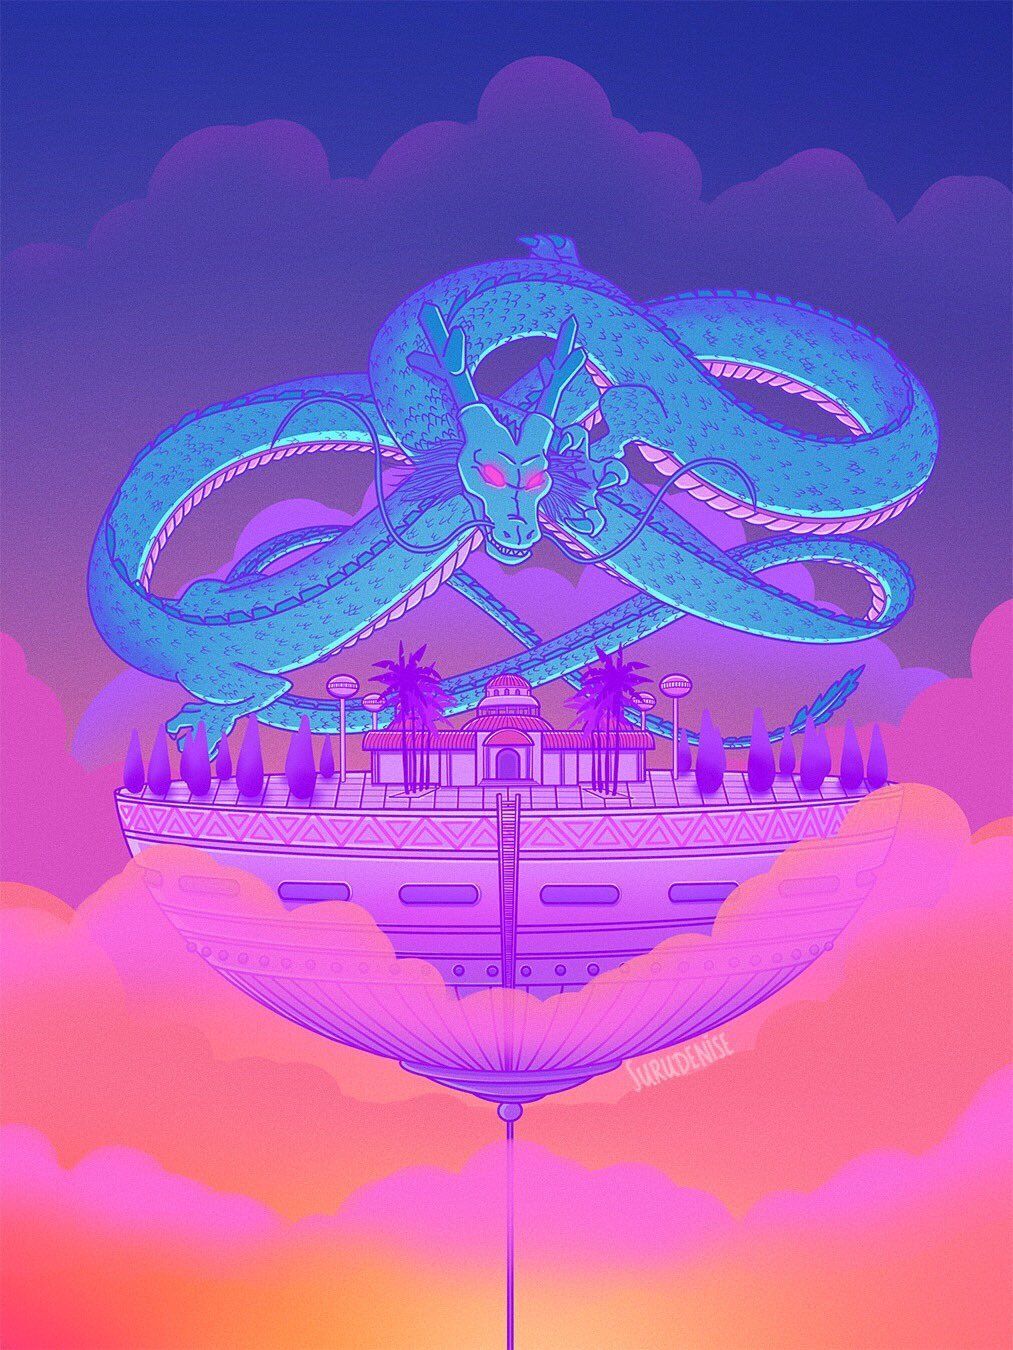 A purple dragon on top of an island - Dragon Ball, dragon